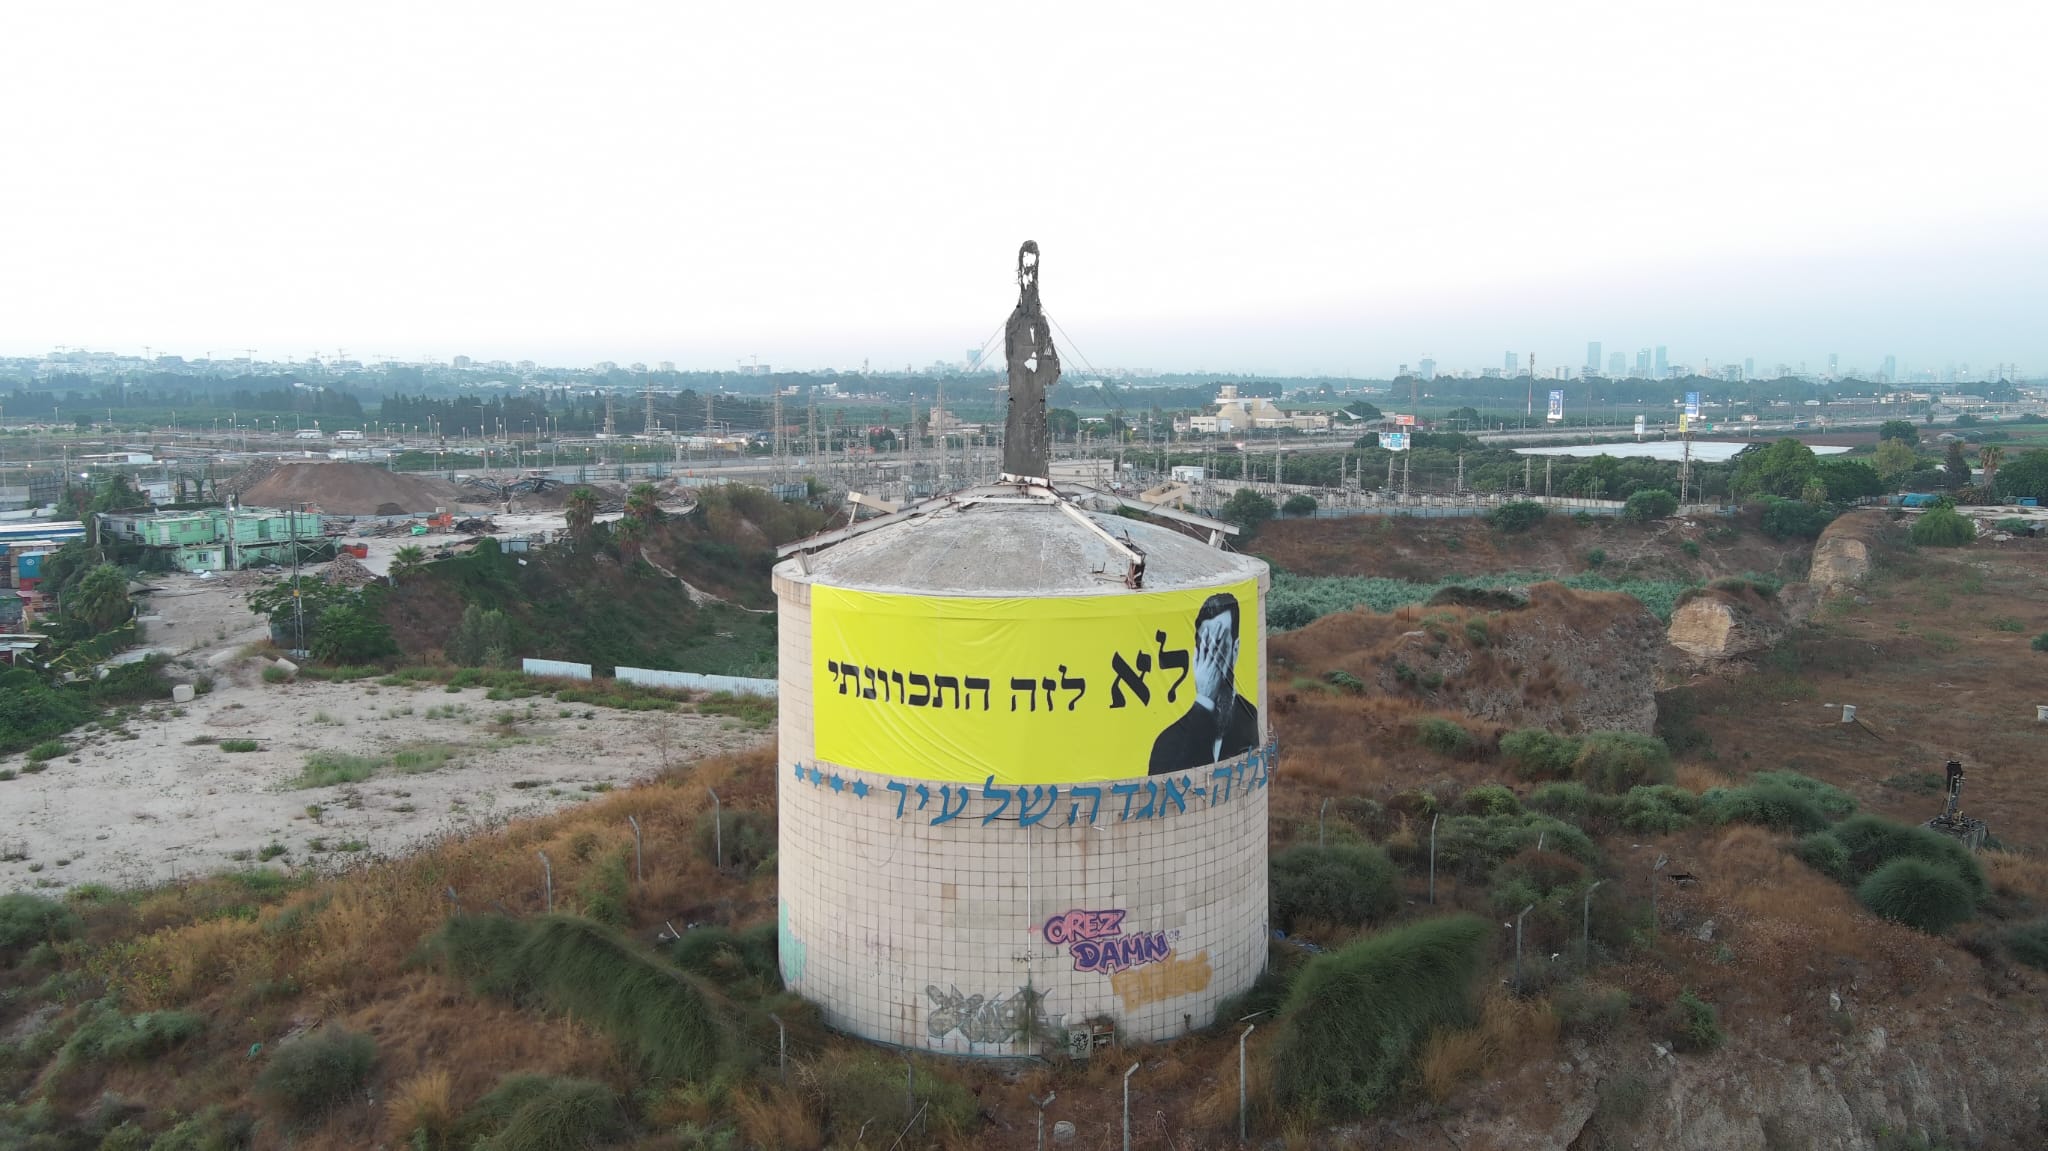 جماعة الإخوة والأخوات في السلاح الاحتجاجية تعلق لافتة تحت تمثال للرائد الصهيوني تيودور هرتسل كتب عليها “لم يكن هذا